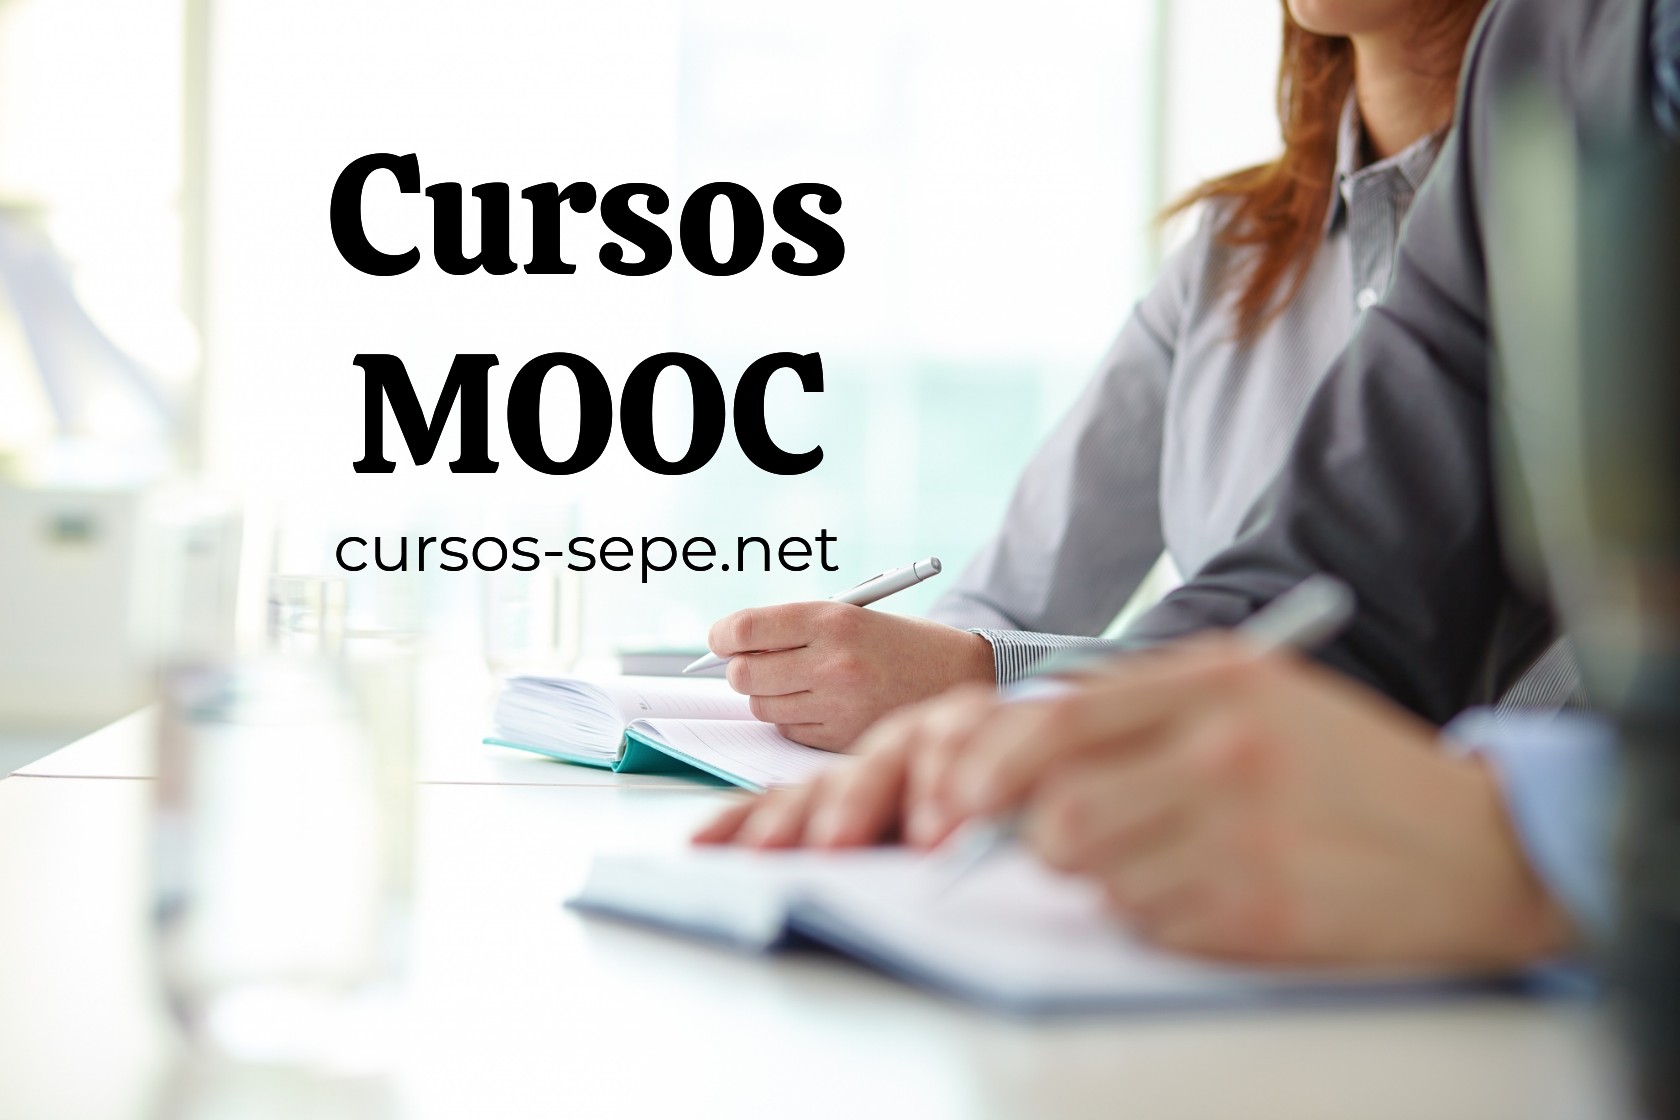 Cursos de formación en modalidad MOOC para ampliar tu experiencia laboral y que te ayude a encontrar empleo.